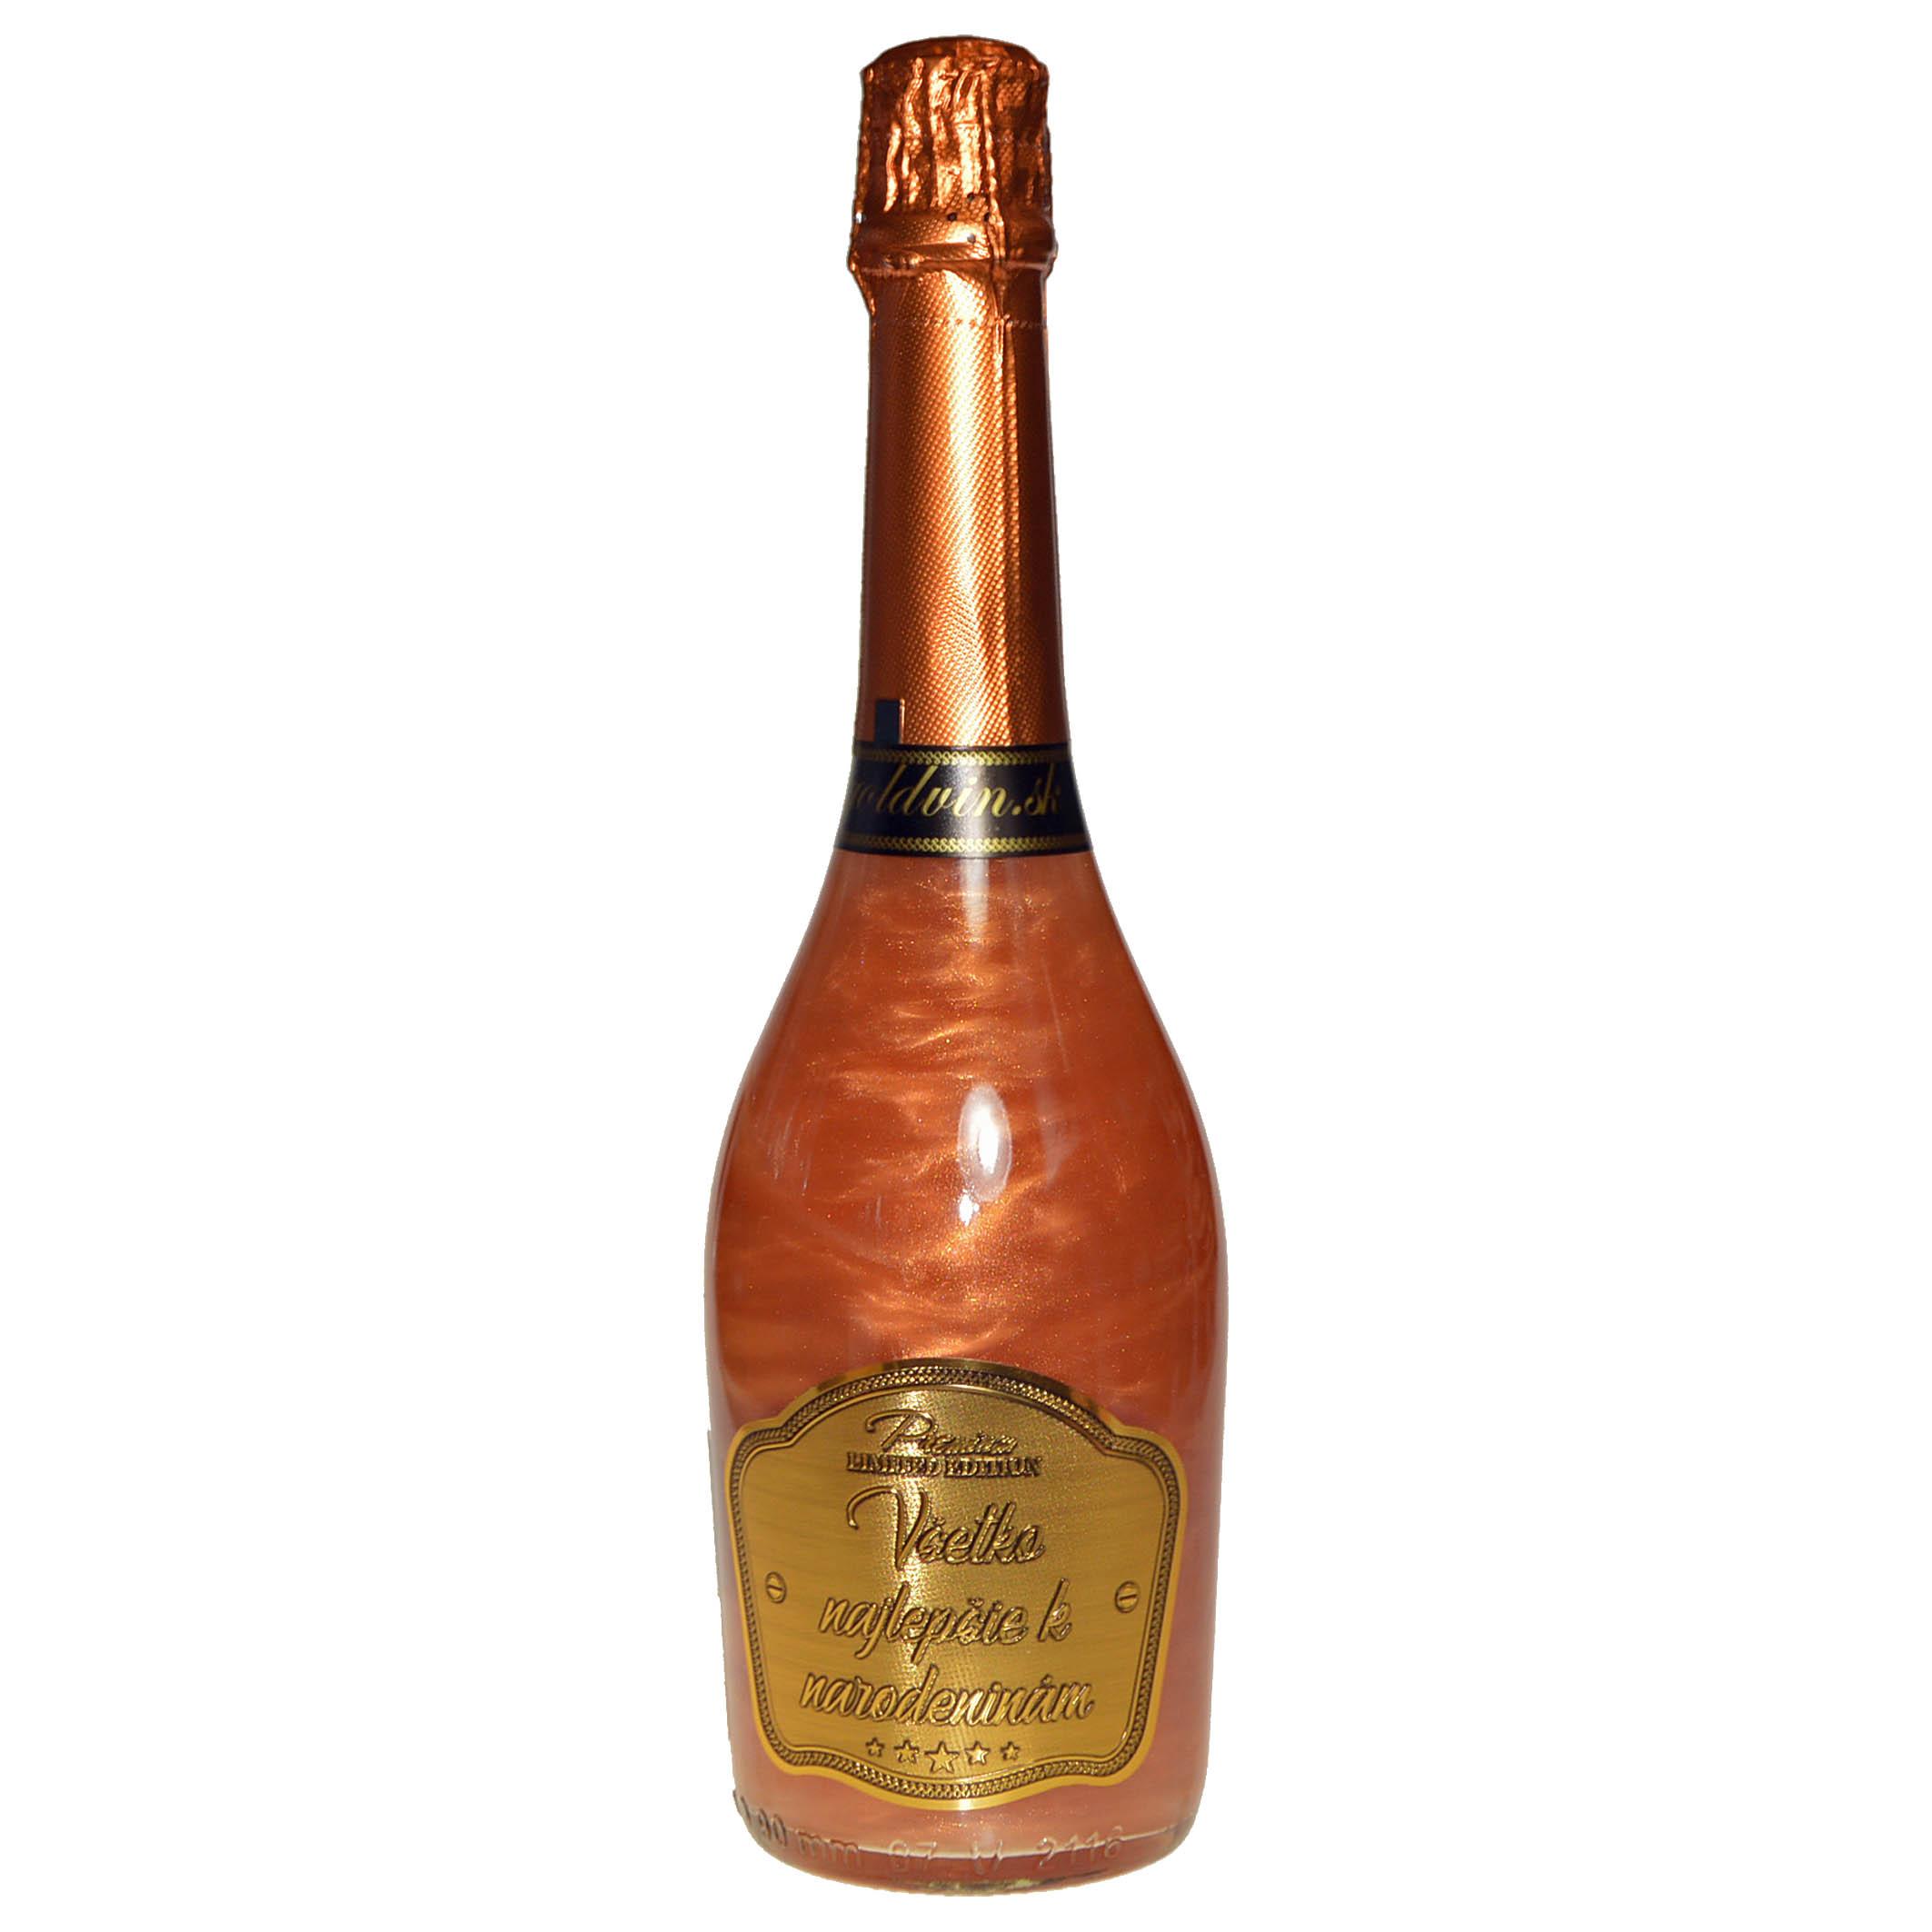 Perlové šampanské GHOST bronzové - Všetko najlepšie k narodeninám